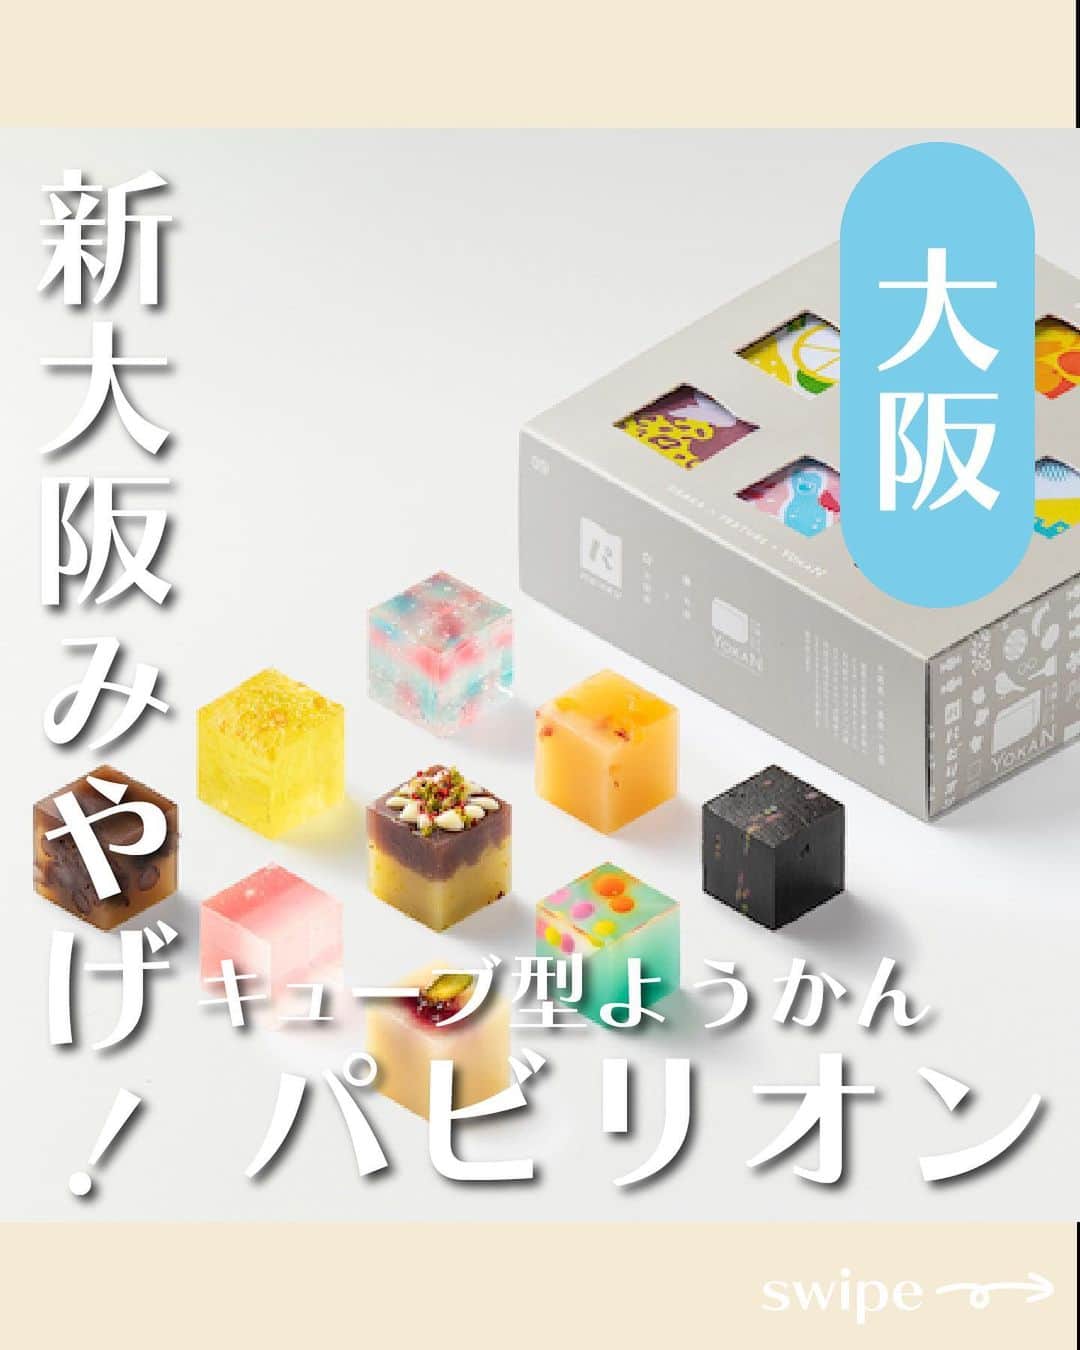 UWASAのインスタグラム：「＼万博に向けた新しい大阪土産が登場！／  「パビリオン」とは、2025年の大阪・関西万博を見据えて 菓子職人が共創し新しい大阪土産を作り出すプロジェクト「大阪ええYOKAN」の第一弾商品です！  万博内の「パビリオン」に見立てた、キューブ型のひとくちようかんで、見た目も楽しい一品✨  「9個入りセット」「3個入りセット」「オリジナル風呂敷」があり、夏休みの旅行やお盆の帰省のお手土産にぴったりです！  8月9日（水）～ 15日（火）、大丸梅田店地下1階「お菓子なパレード」にて、期間限定で販売なので、ぜひ期間中に足を運んでみてください😌  ※PRTIMESより引用  <<✏️=========================>> グルメに関する素敵なお写真を 厳選してご紹介しています📷🌈 @joshime_gourmet or #joshime をタグ付けしてね👀🎉 <<=========================📖>>  #JOSHIME #ジョシメ ##阪急梅田本店#大丸梅田店 #催事 #あたらしい大阪みやげ #大阪みやげ #大阪土産 #ようかん #羊羹 #大阪ええYOKAN #パビリオン #大阪関西万博 #髙山堂 #あん庵 #吉乃屋松原#大阪本家駿河屋 #福壽堂秀信 #本まつばや #大阪緑涼高等学校 #株式会社人間 #茨木旬菓庵蔦屋#カグノミ堂#お多福堂」